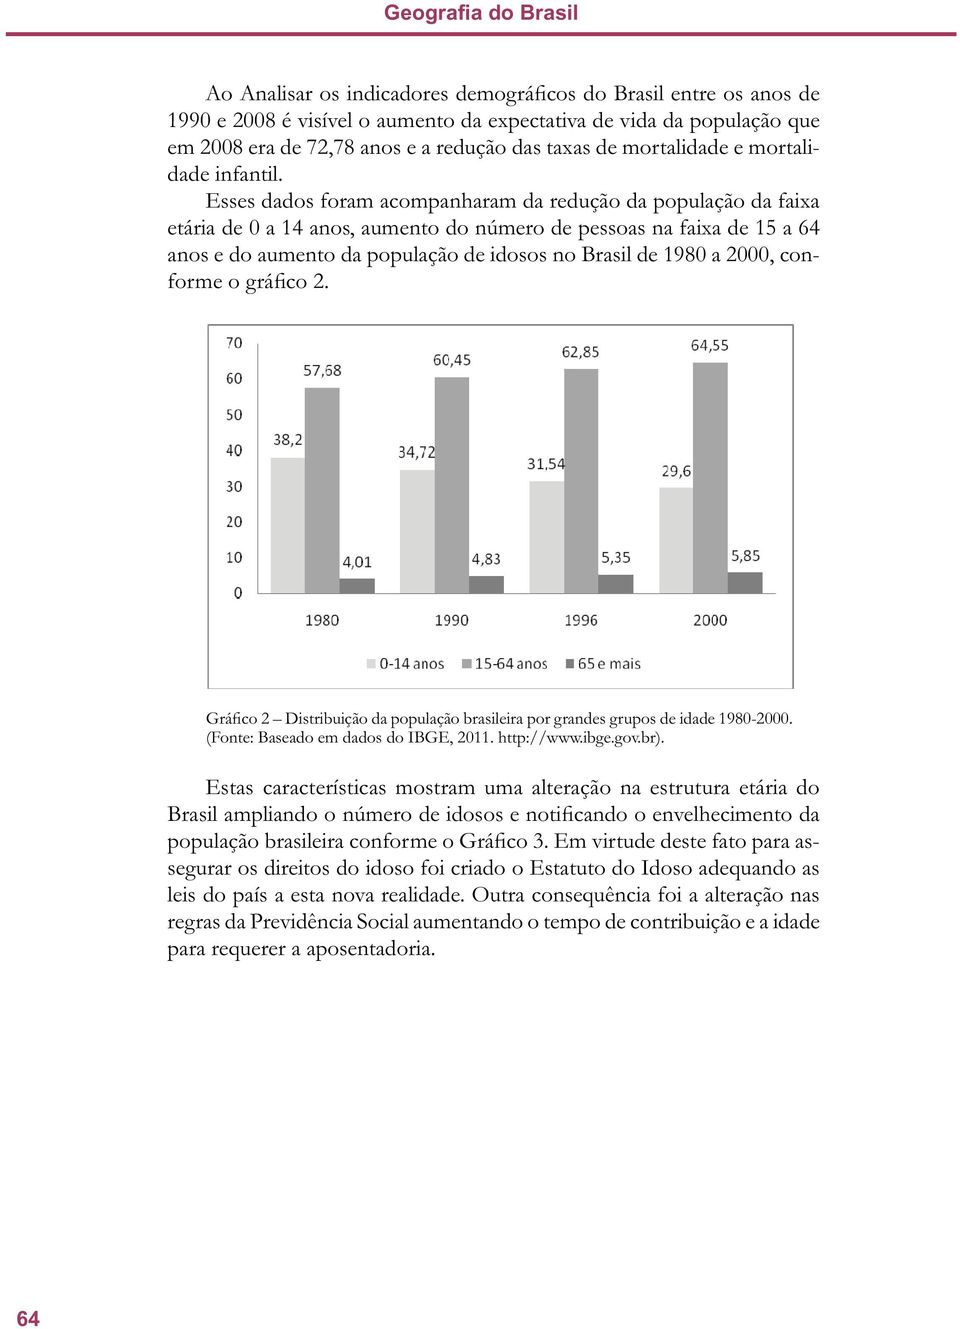 Esses dados foram acompanharam da redução da população da faixa etária de 0 a 14 anos, aumento do número de pessoas na faixa de 15 a 64 anos e do aumento da população de idosos no Brasil de 1980 a